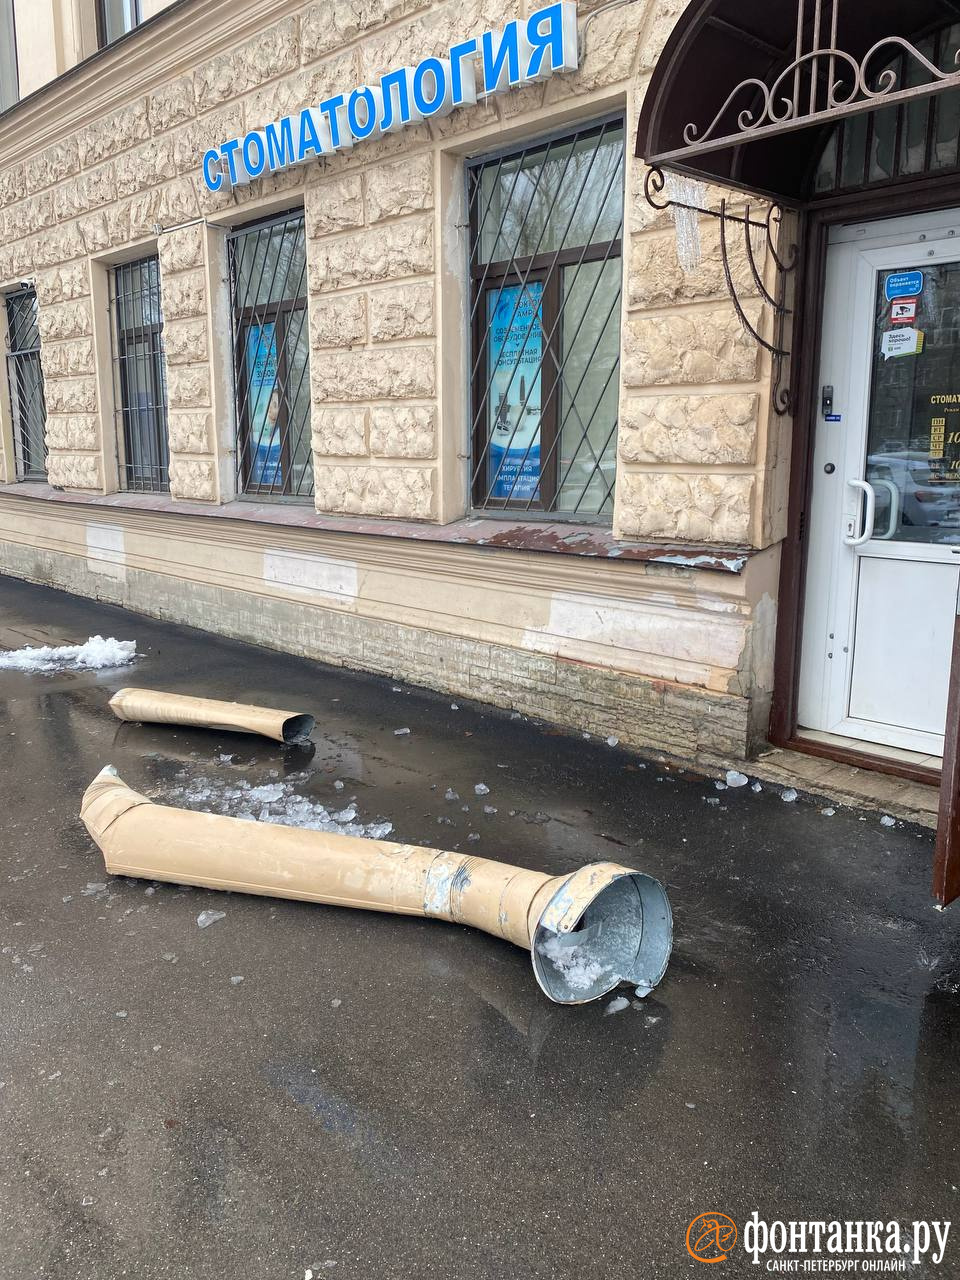 Апрельские сосульки атакуют петербуржцев. Под натиском льда падают целые трубы